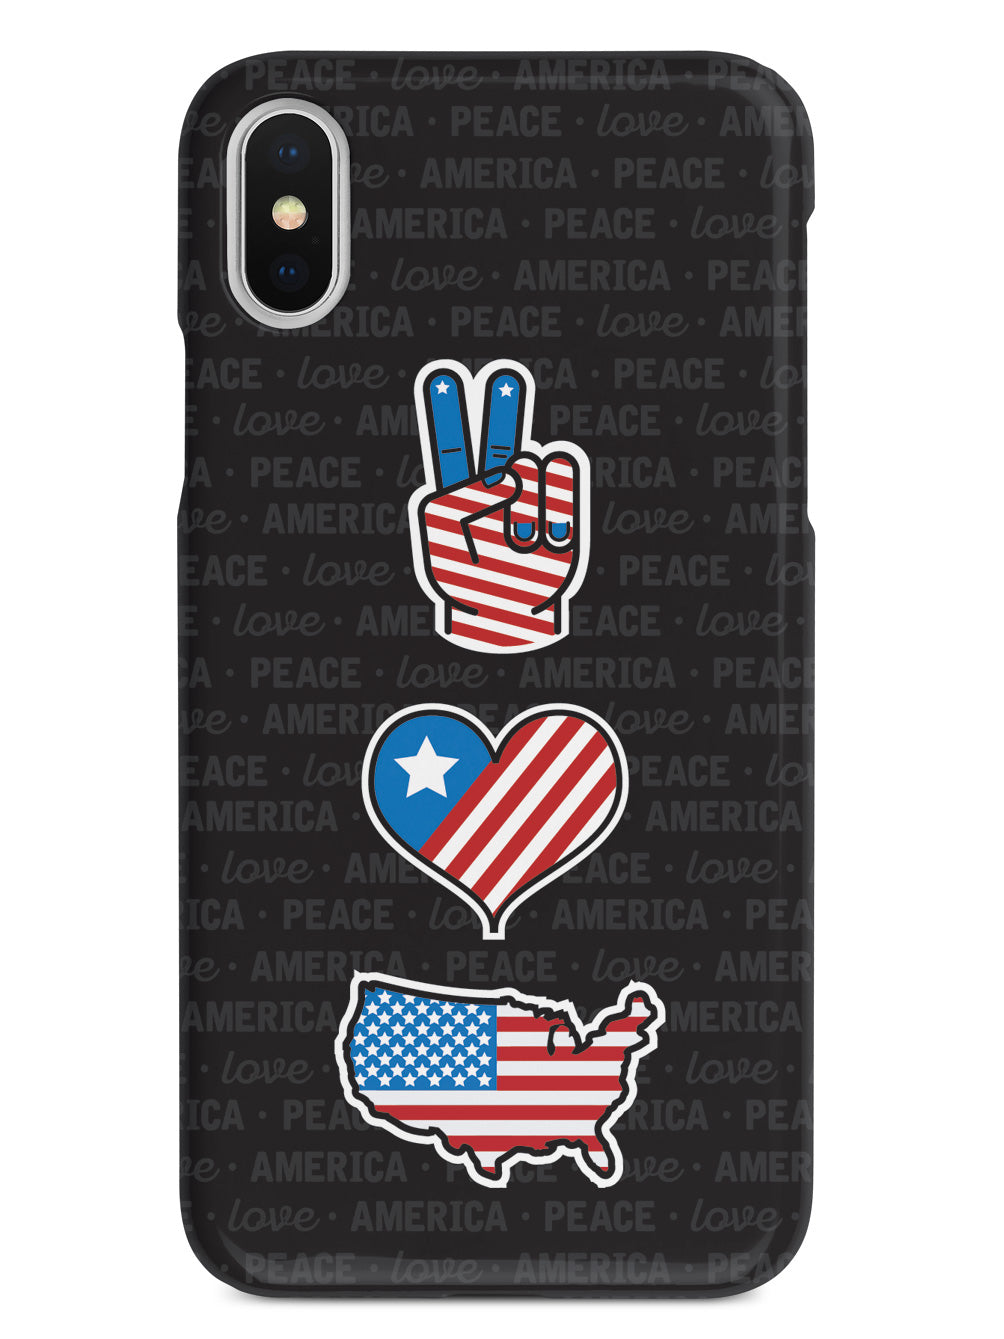 Peace, Love & America - Patriotic Case